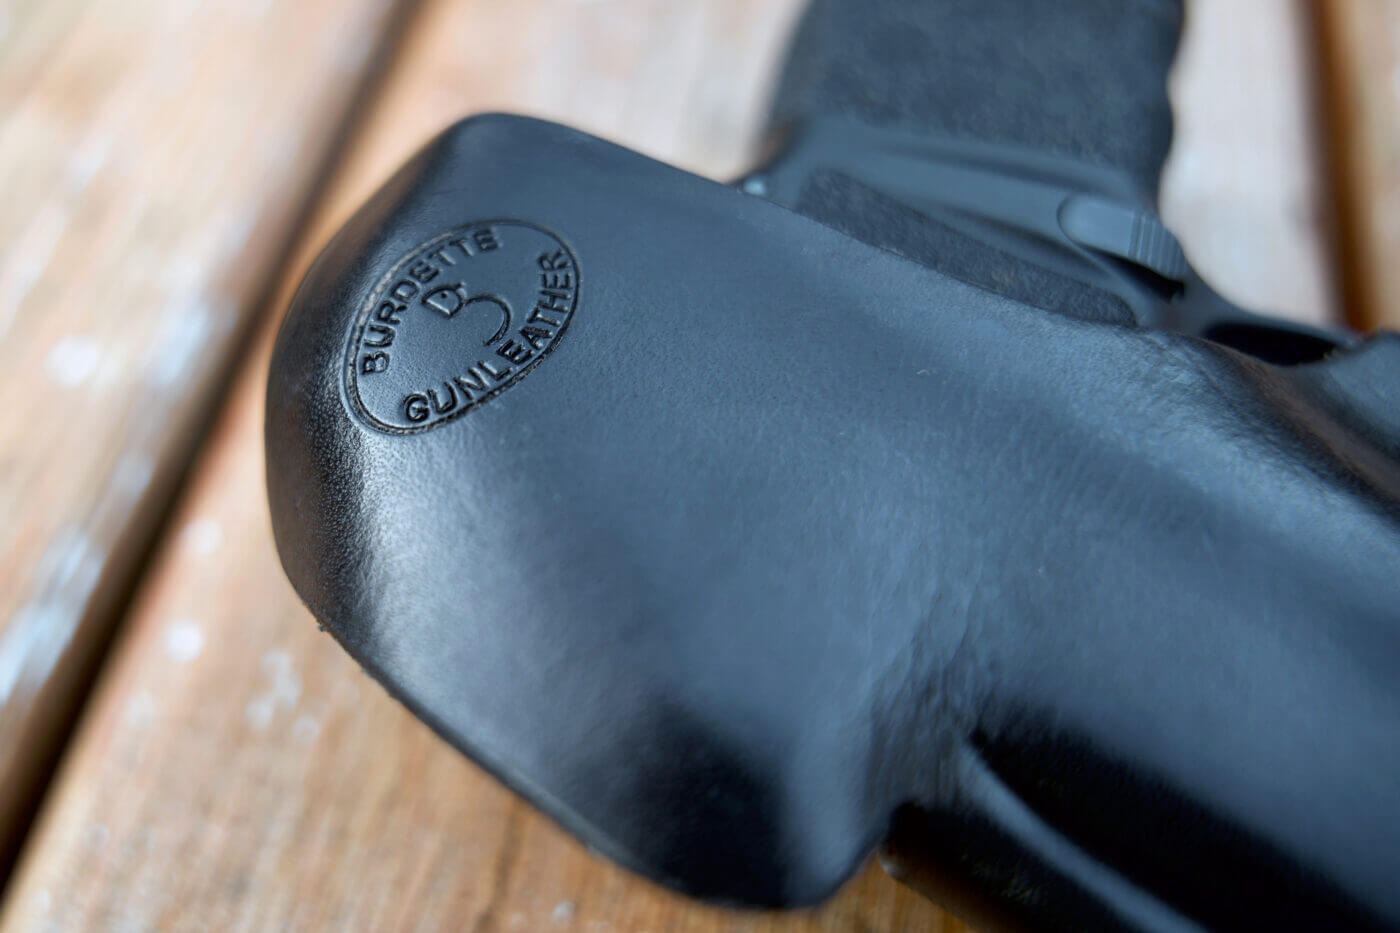 Detail shot of maker mark on leather holster